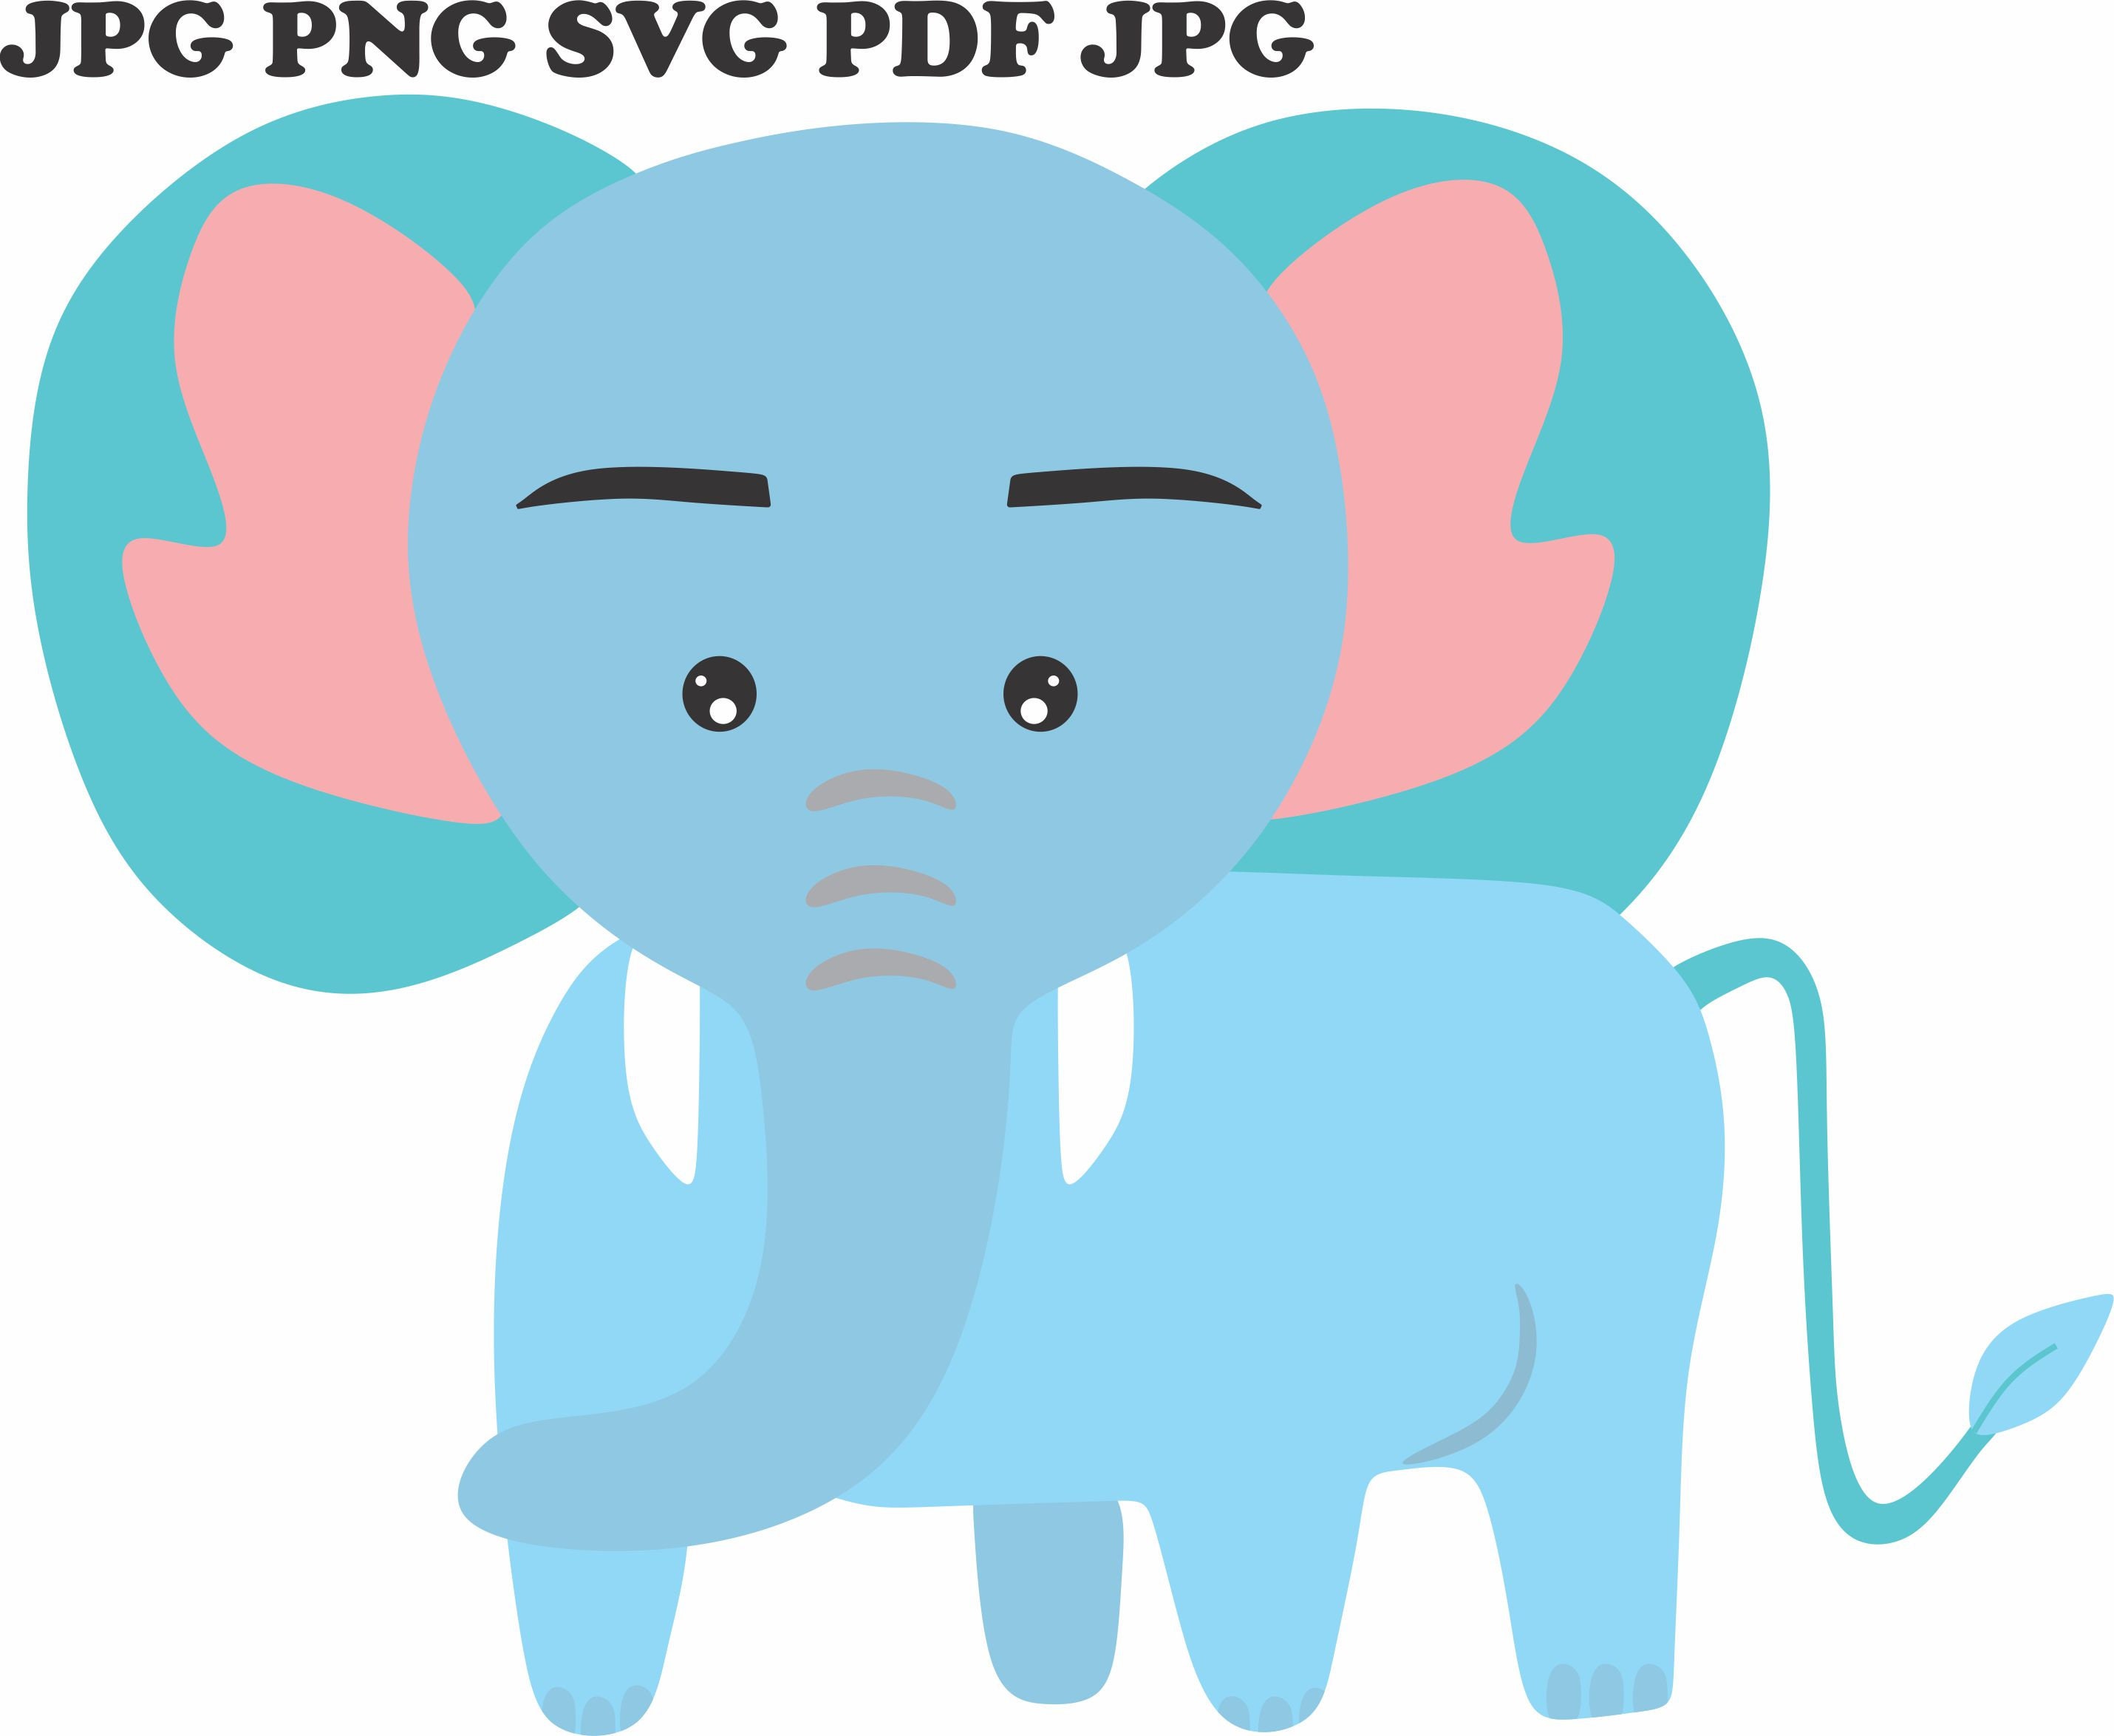 Elephant svg elephant vector elephant png elephant vector art | Etsy